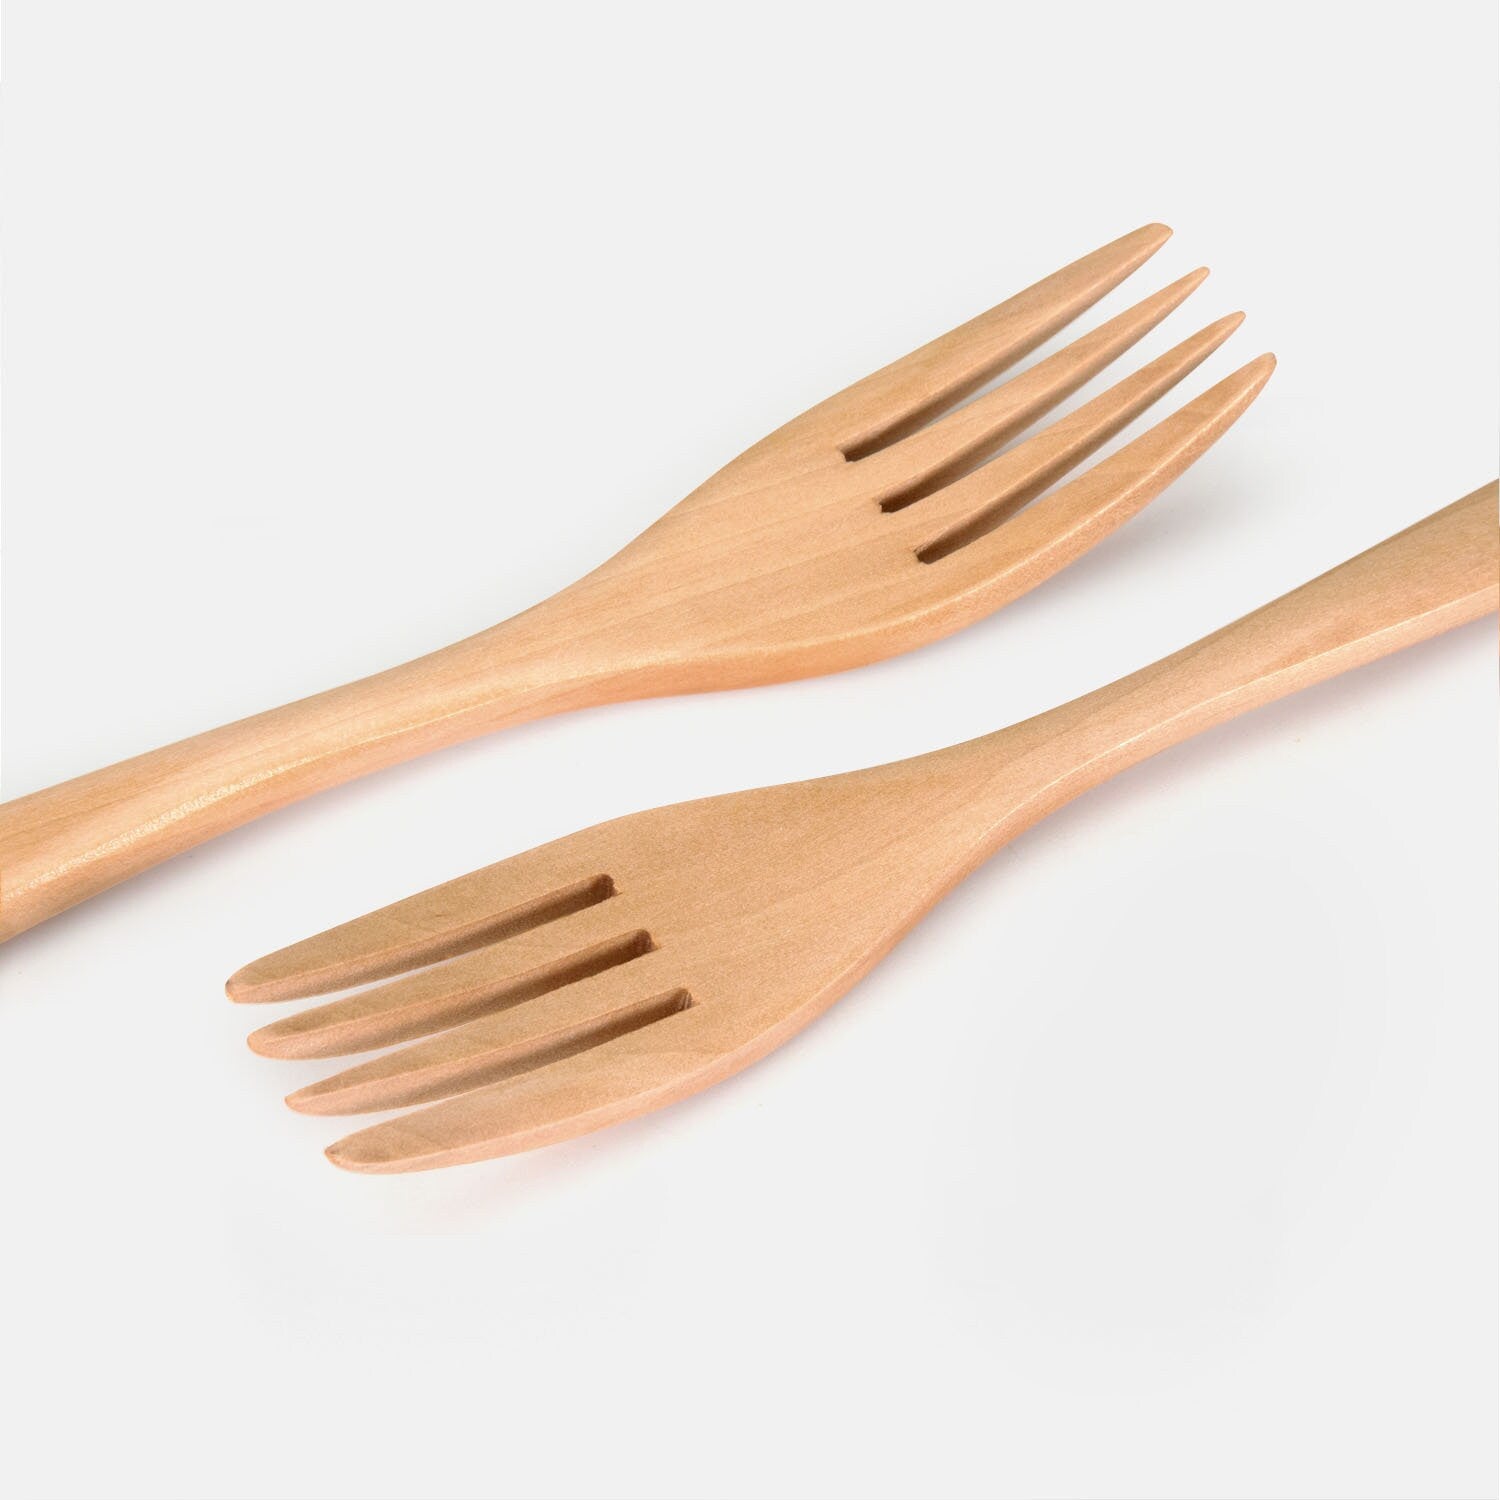 Wooden Table Fork Set 5